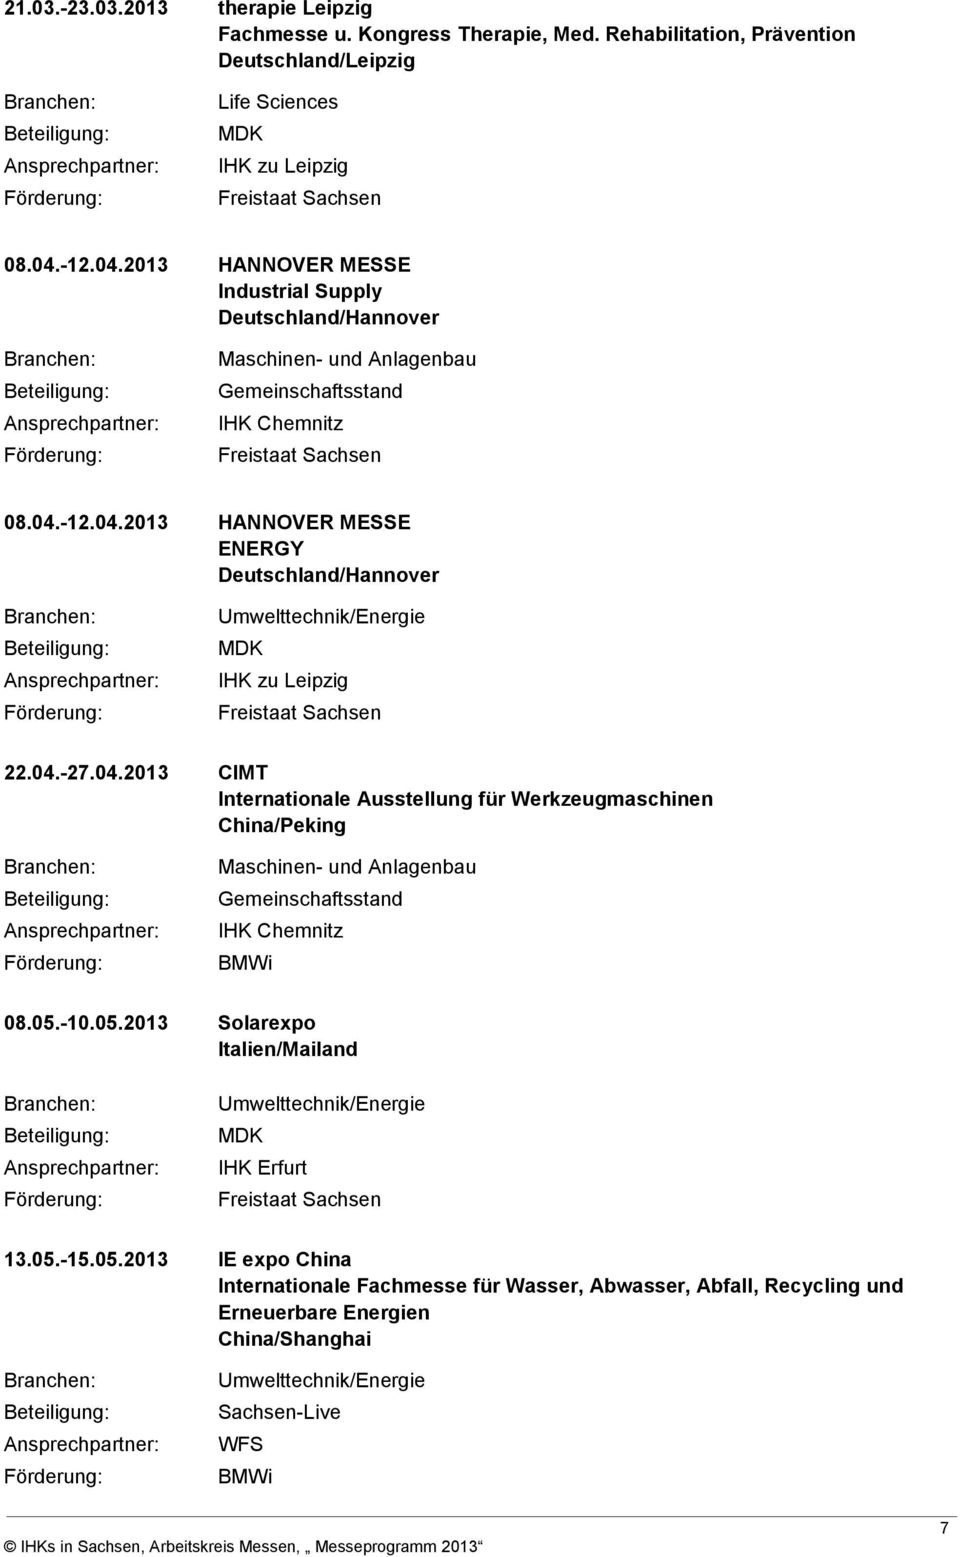 04.-27.04.2013 CIMT Internationale Ausstellung für Werkzeugmaschinen China/Peking Maschinen- und Anlagenbau emeinschaftsstand IHK Chemnitz BMWi 08.05.